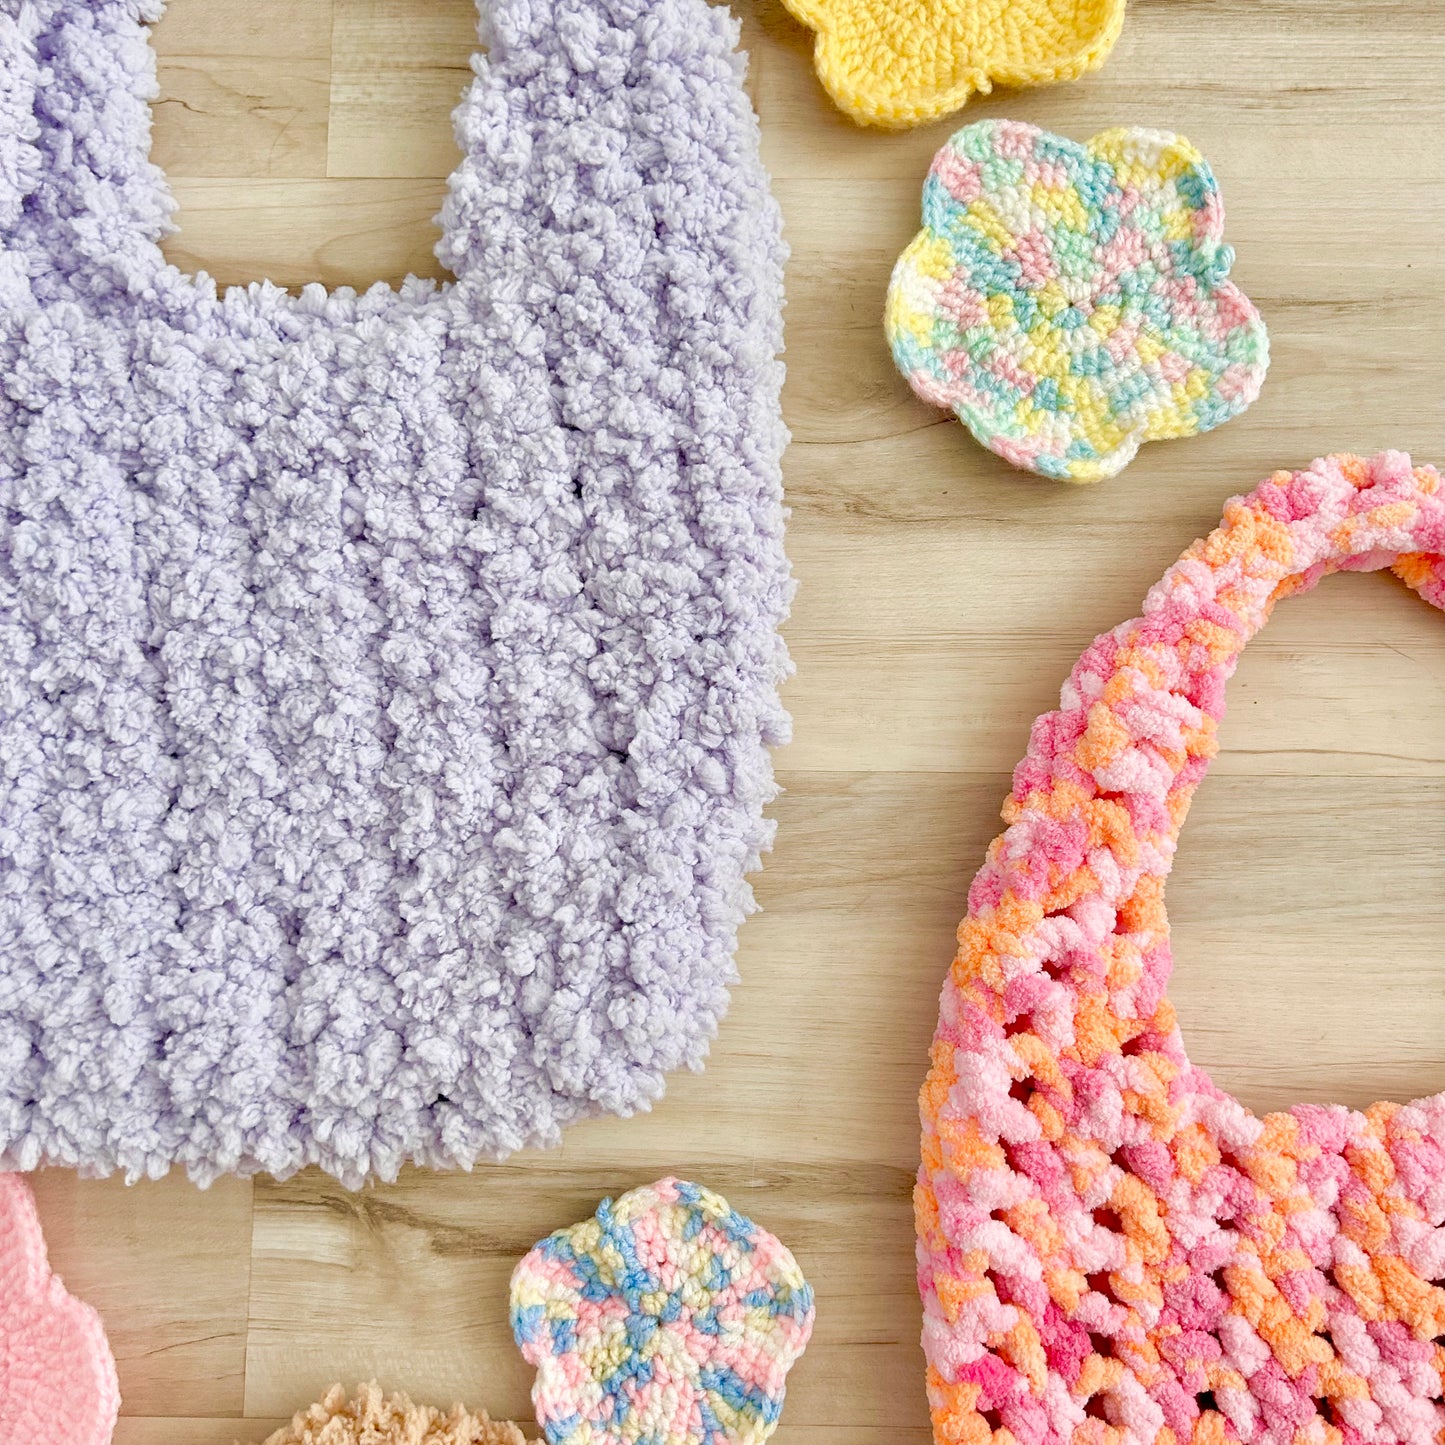 Lilac Crochet Teddy Bag